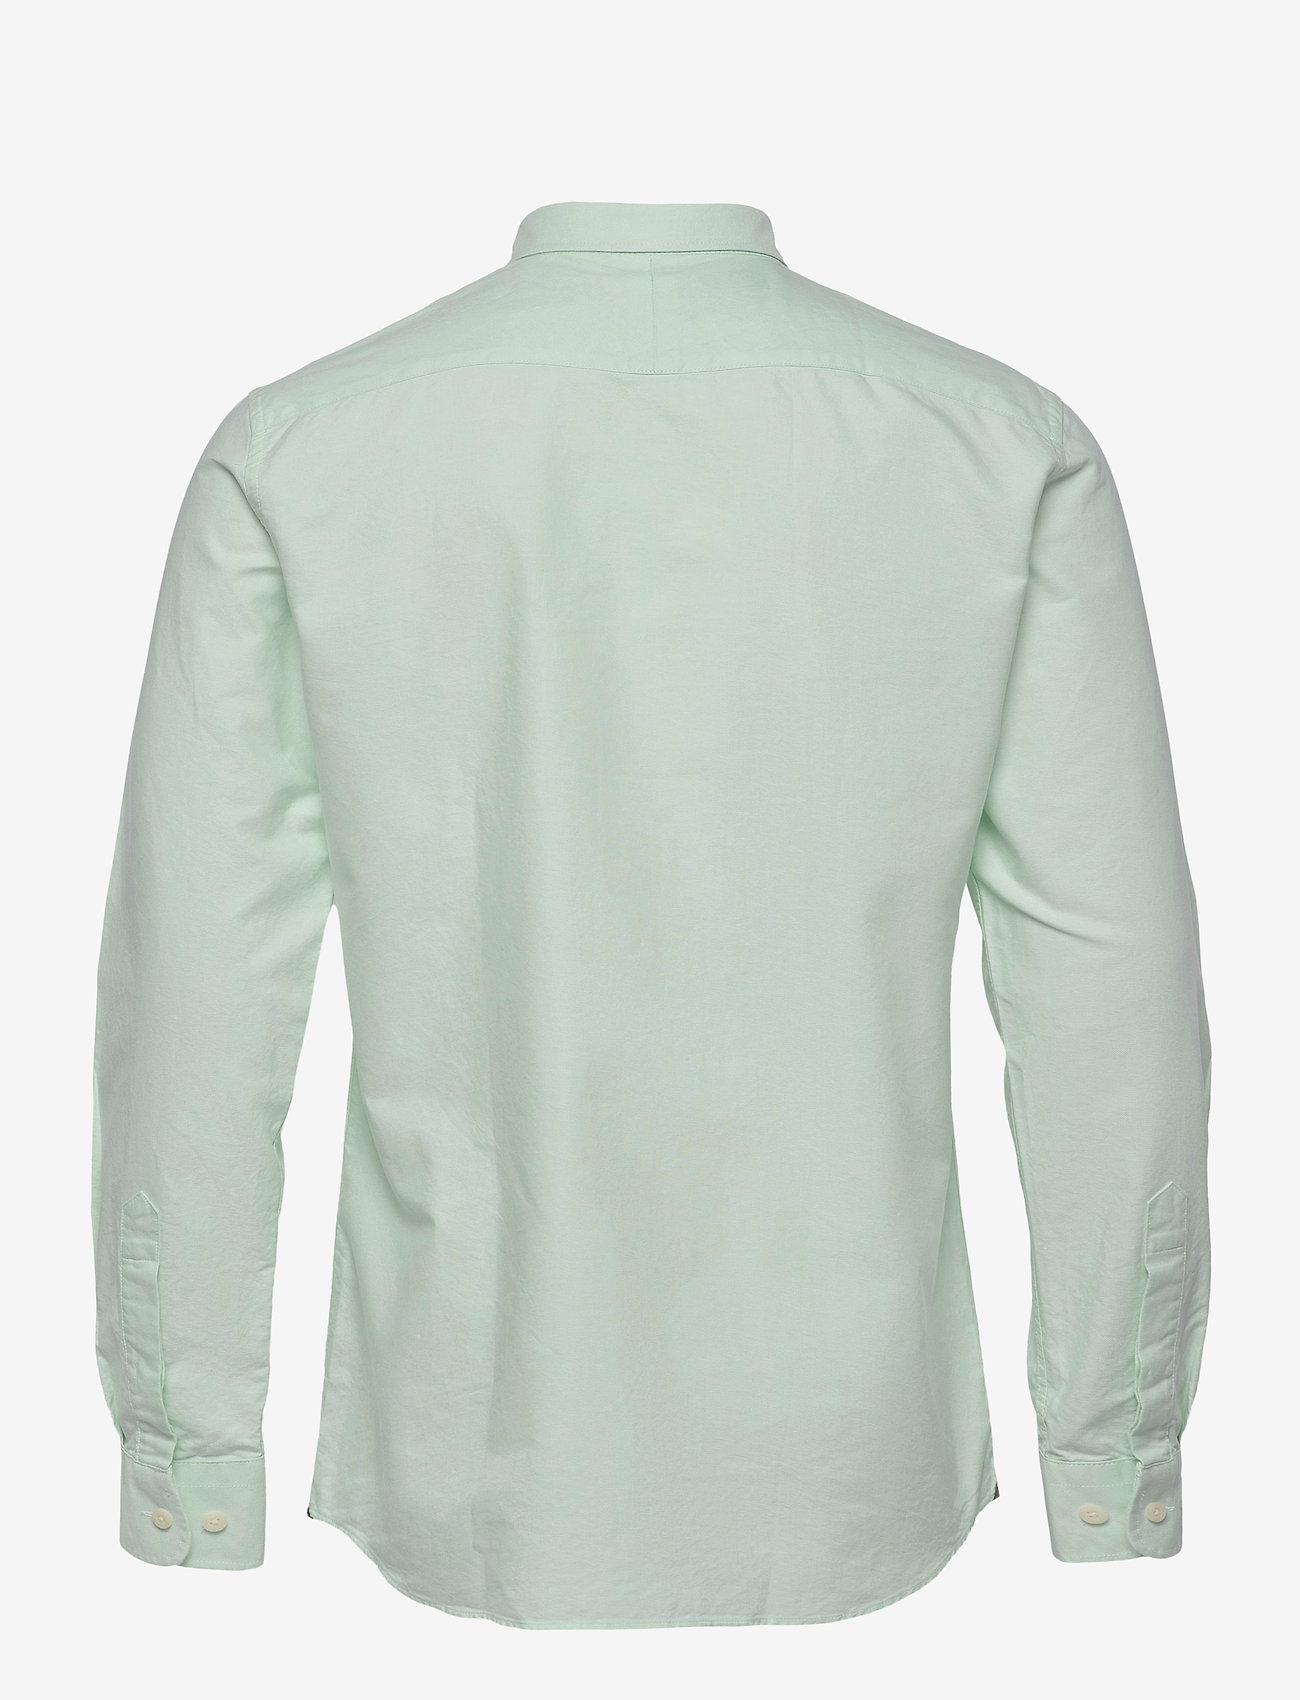 Morris - Douglas Shirt-Slim Fit - basic overhemden - turquoise - 1